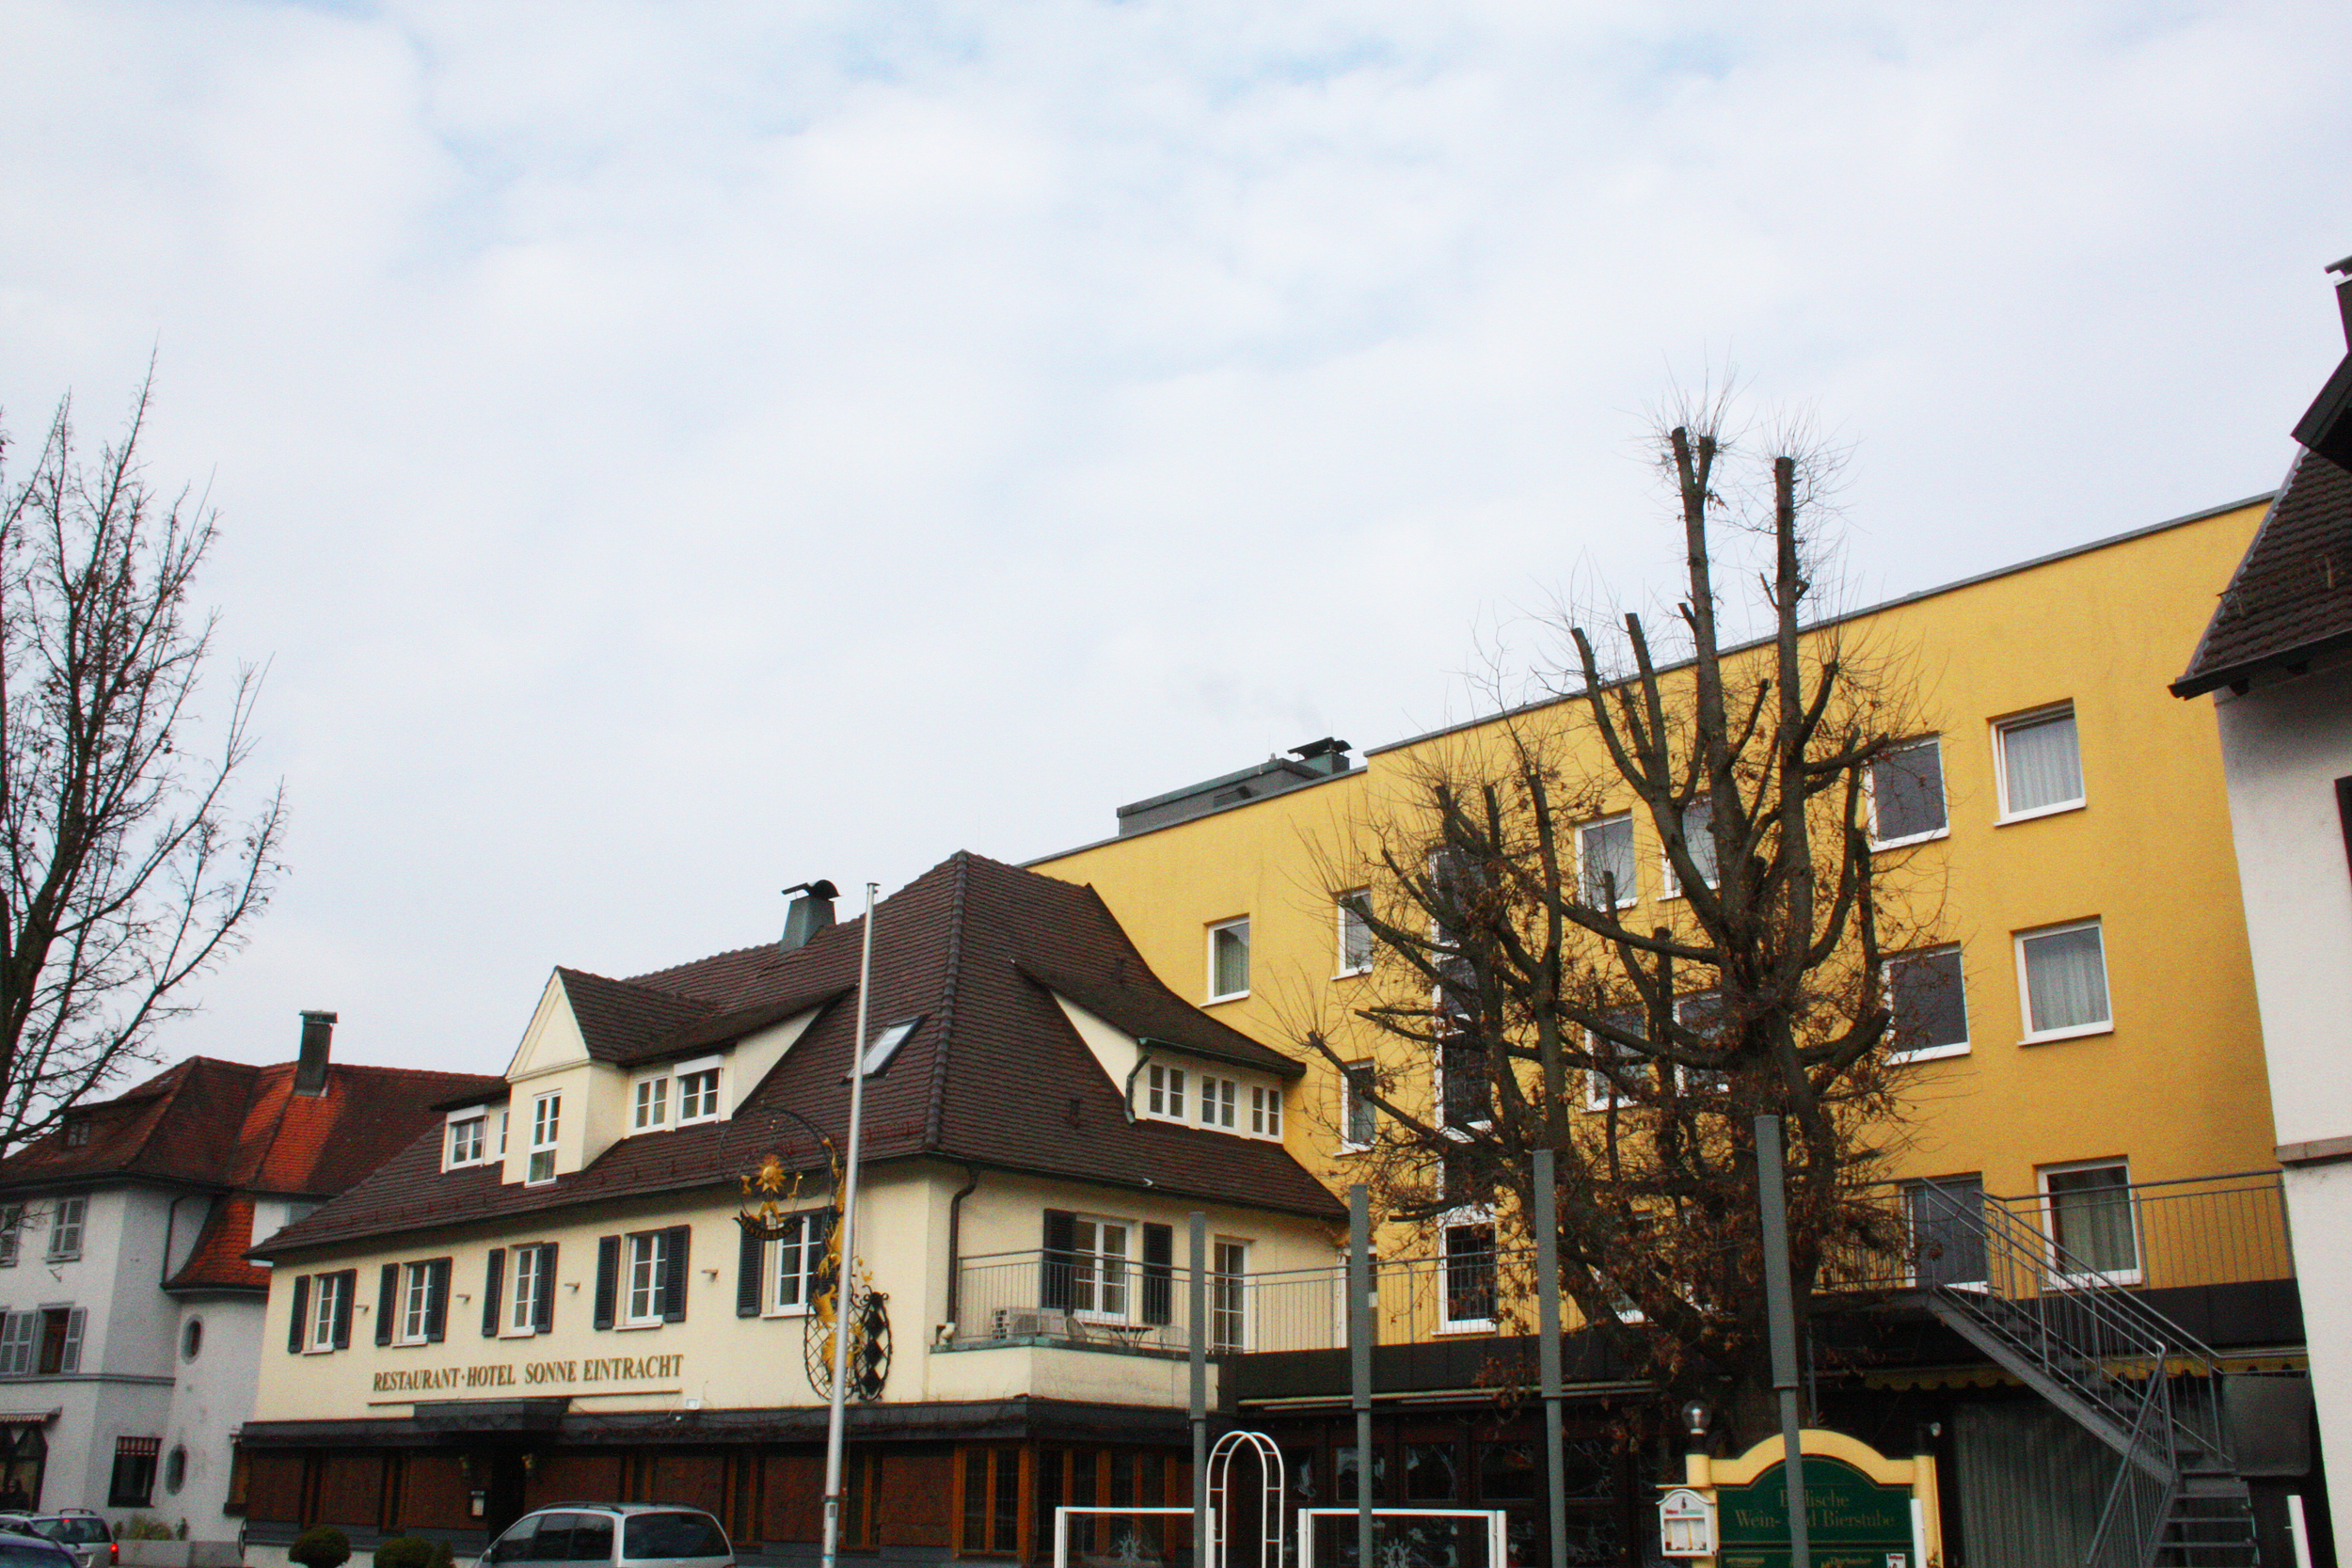 Hotel Sonne Eintracht, Achern.
